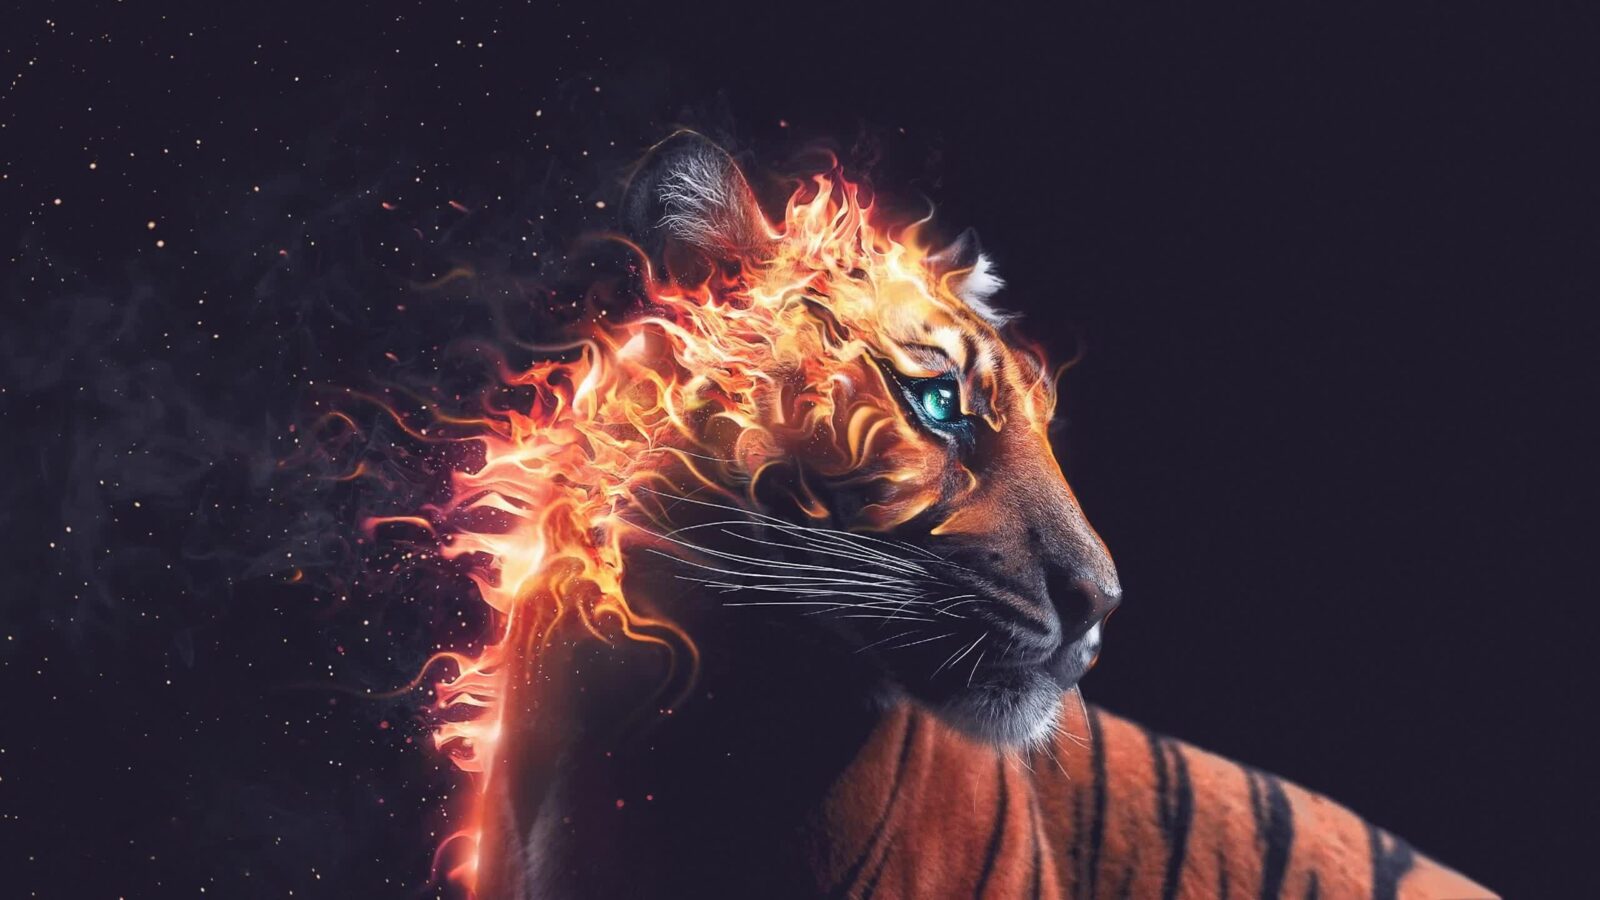 Fantasy Tiger in flames / Fire Mane - Live Desktop Wallpaper - Live